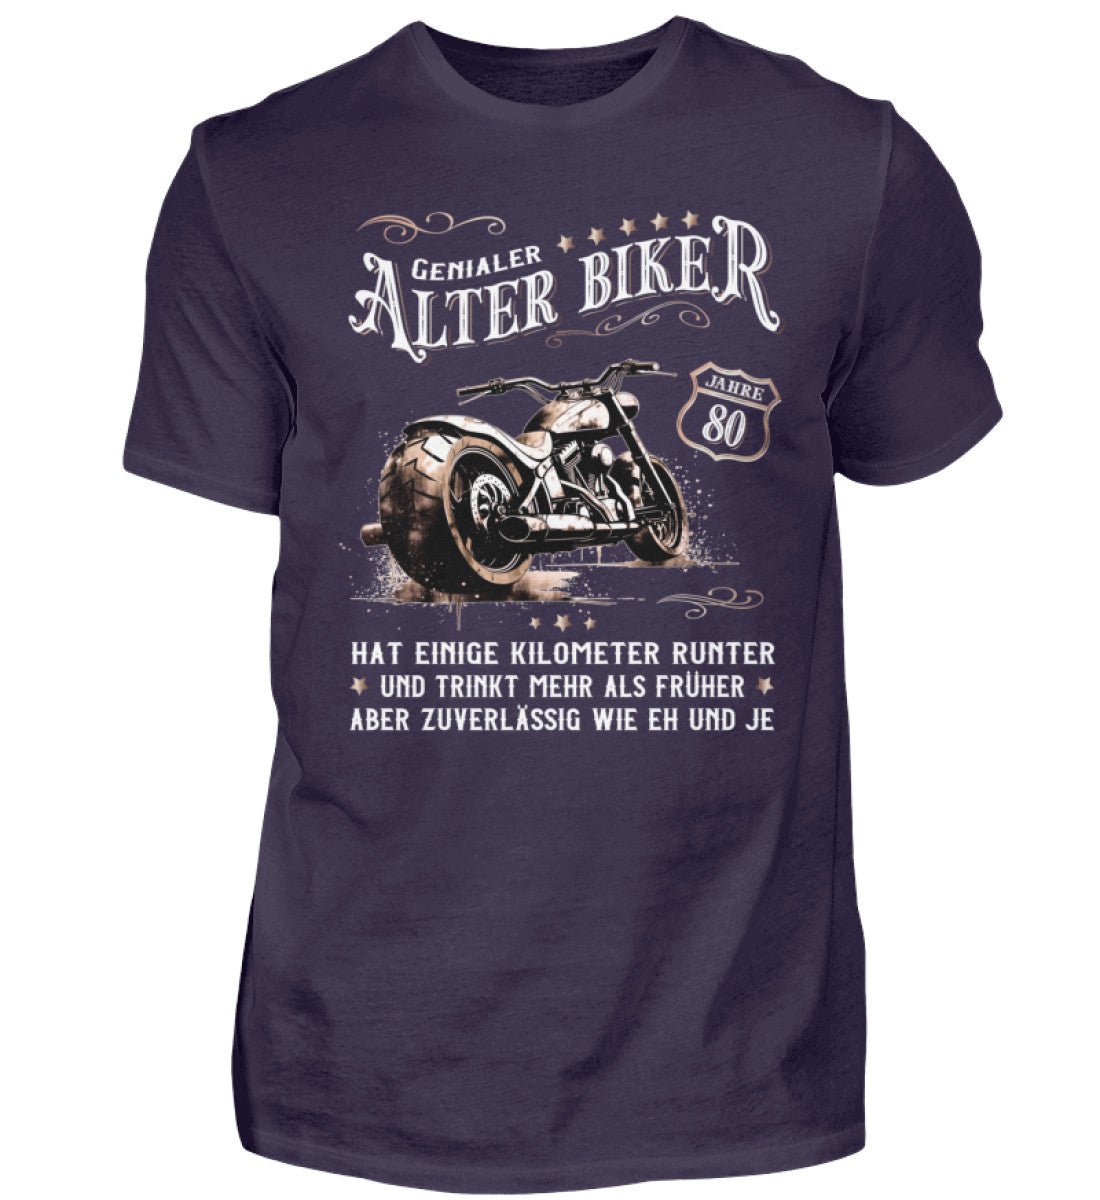 Ein Biker T-Shirt zum Geburtstag für Motorradfahrer von Wingbikers mit dem Aufdruck, Alter Biker - 80 Jahre - Einige Kilometer runter, trinkt mehr - aber zuverlässig wie eh und je - in aubergine lila.